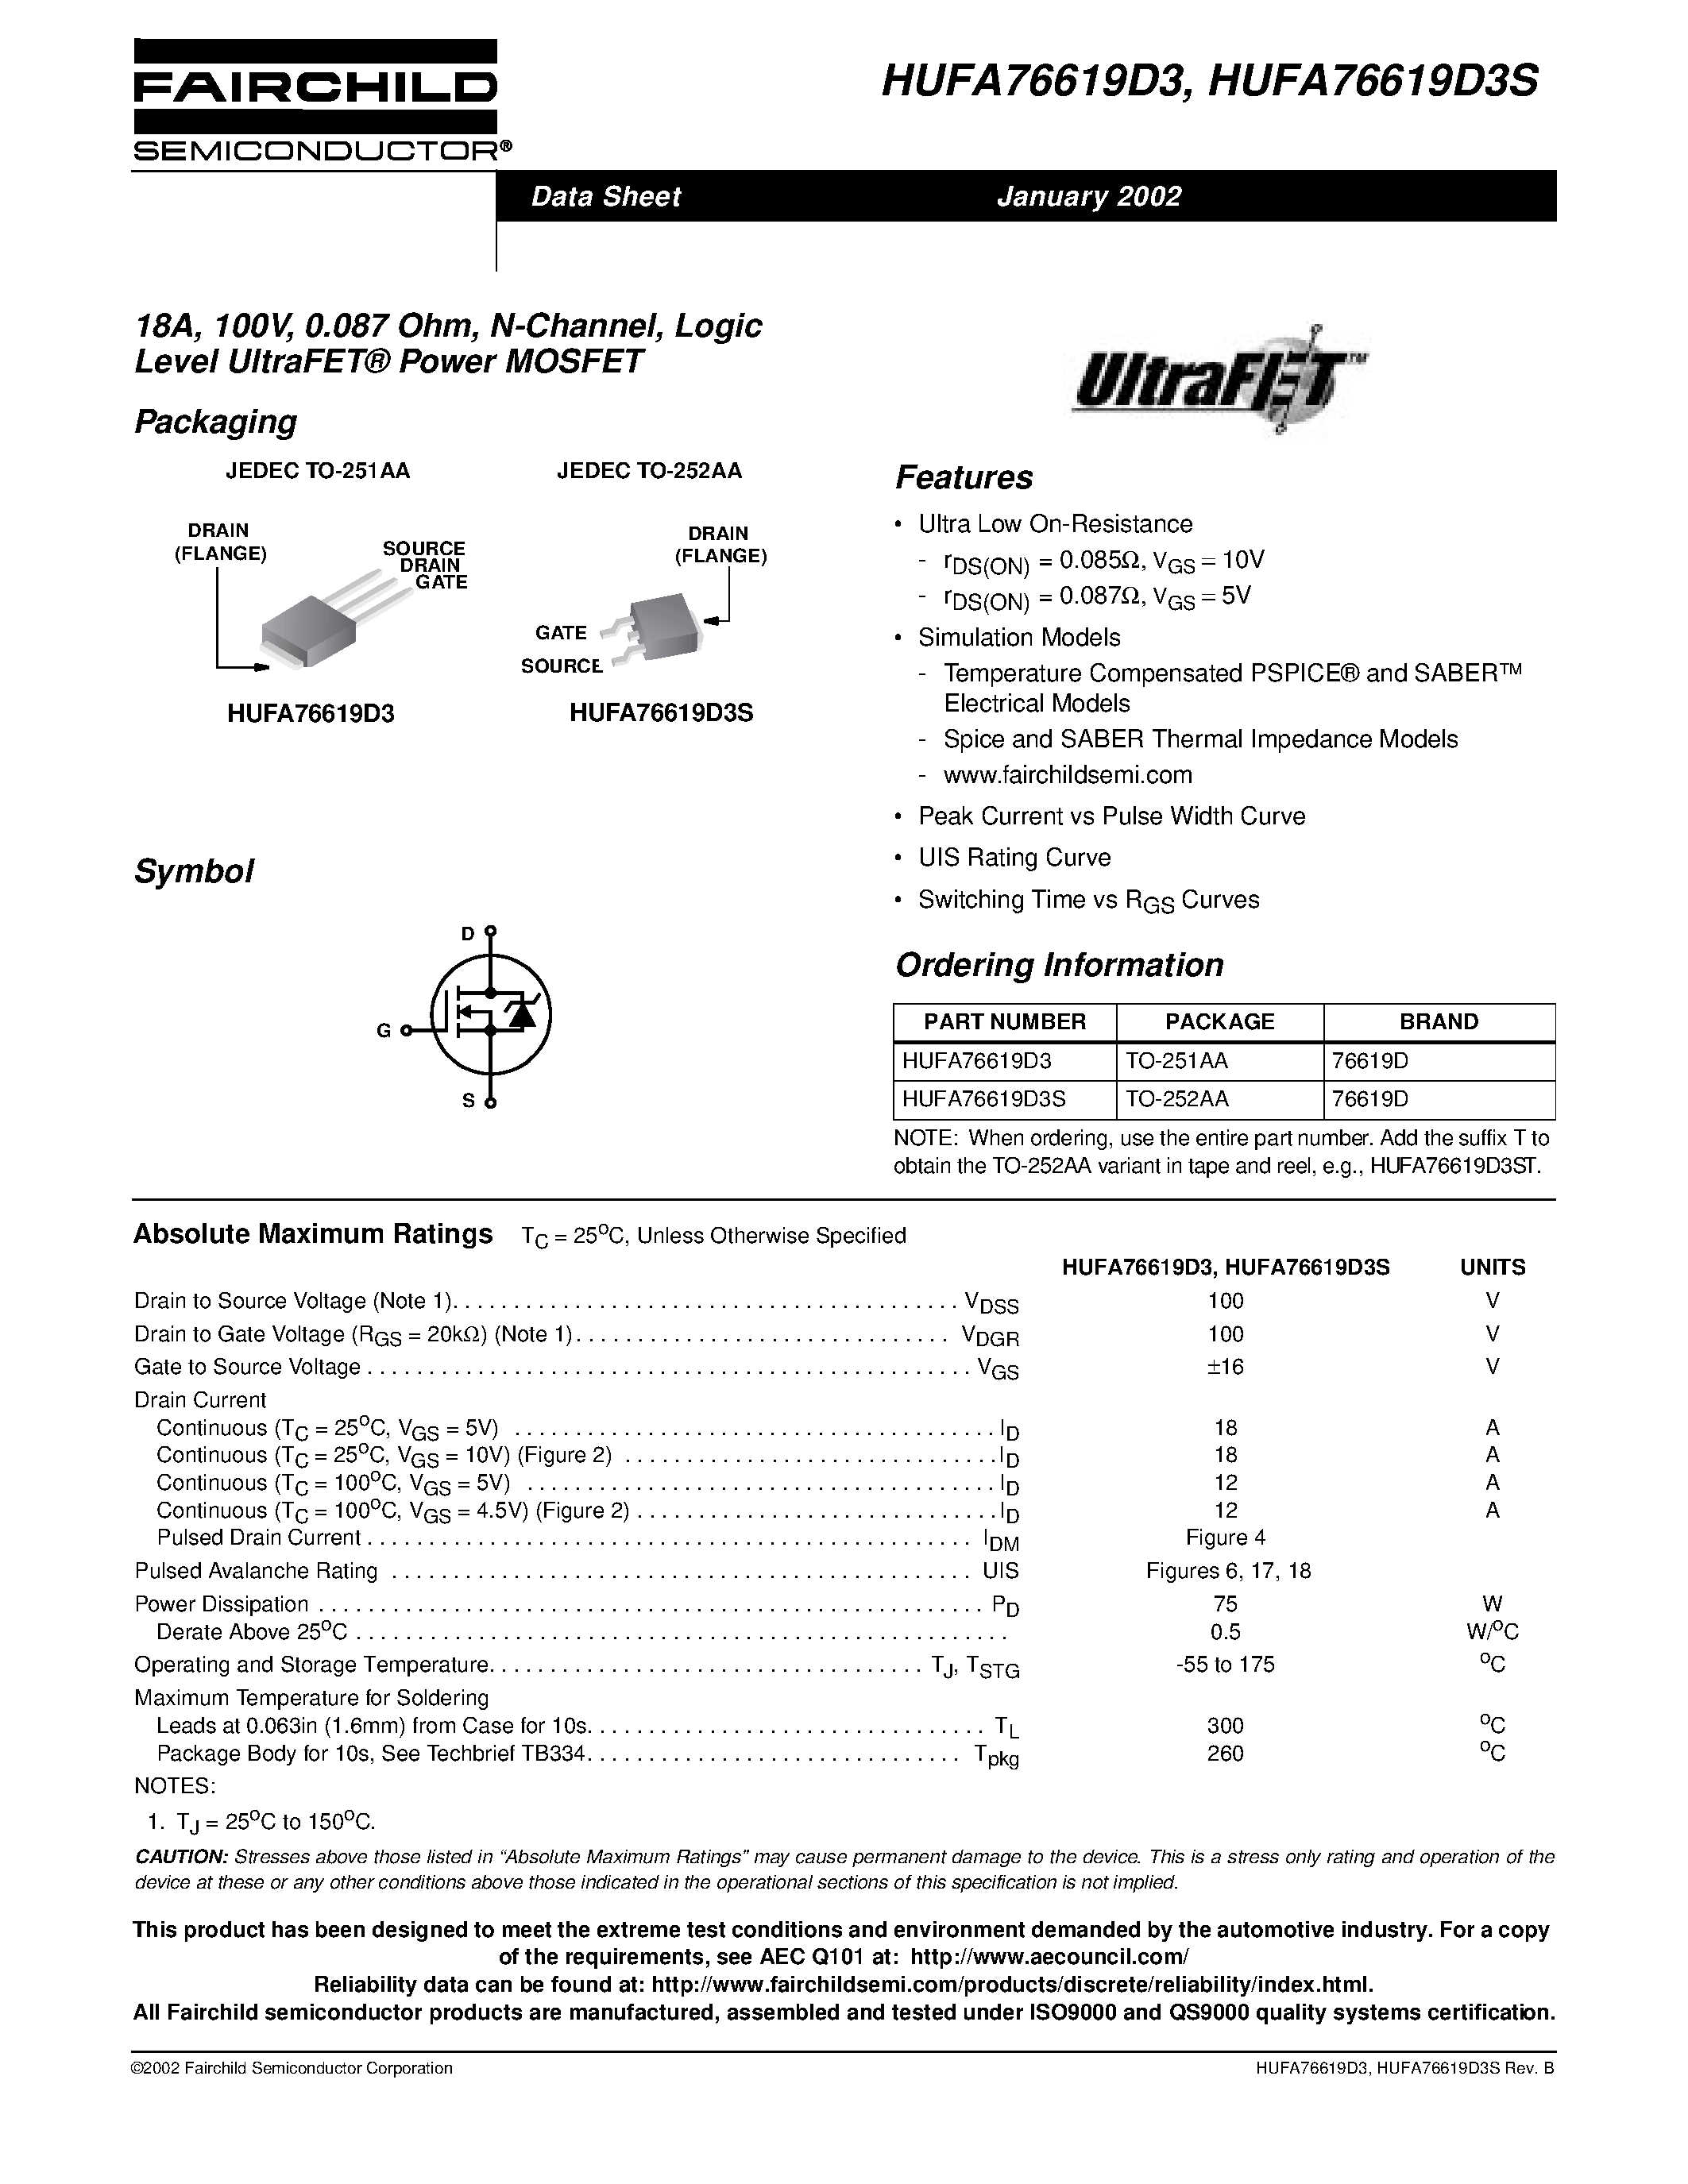 Даташит HUFA76619D3S - 18A/ 100V/ 0.087 Ohm/ N-Channel/ Logic Level UltraFET Power MOSFET страница 1